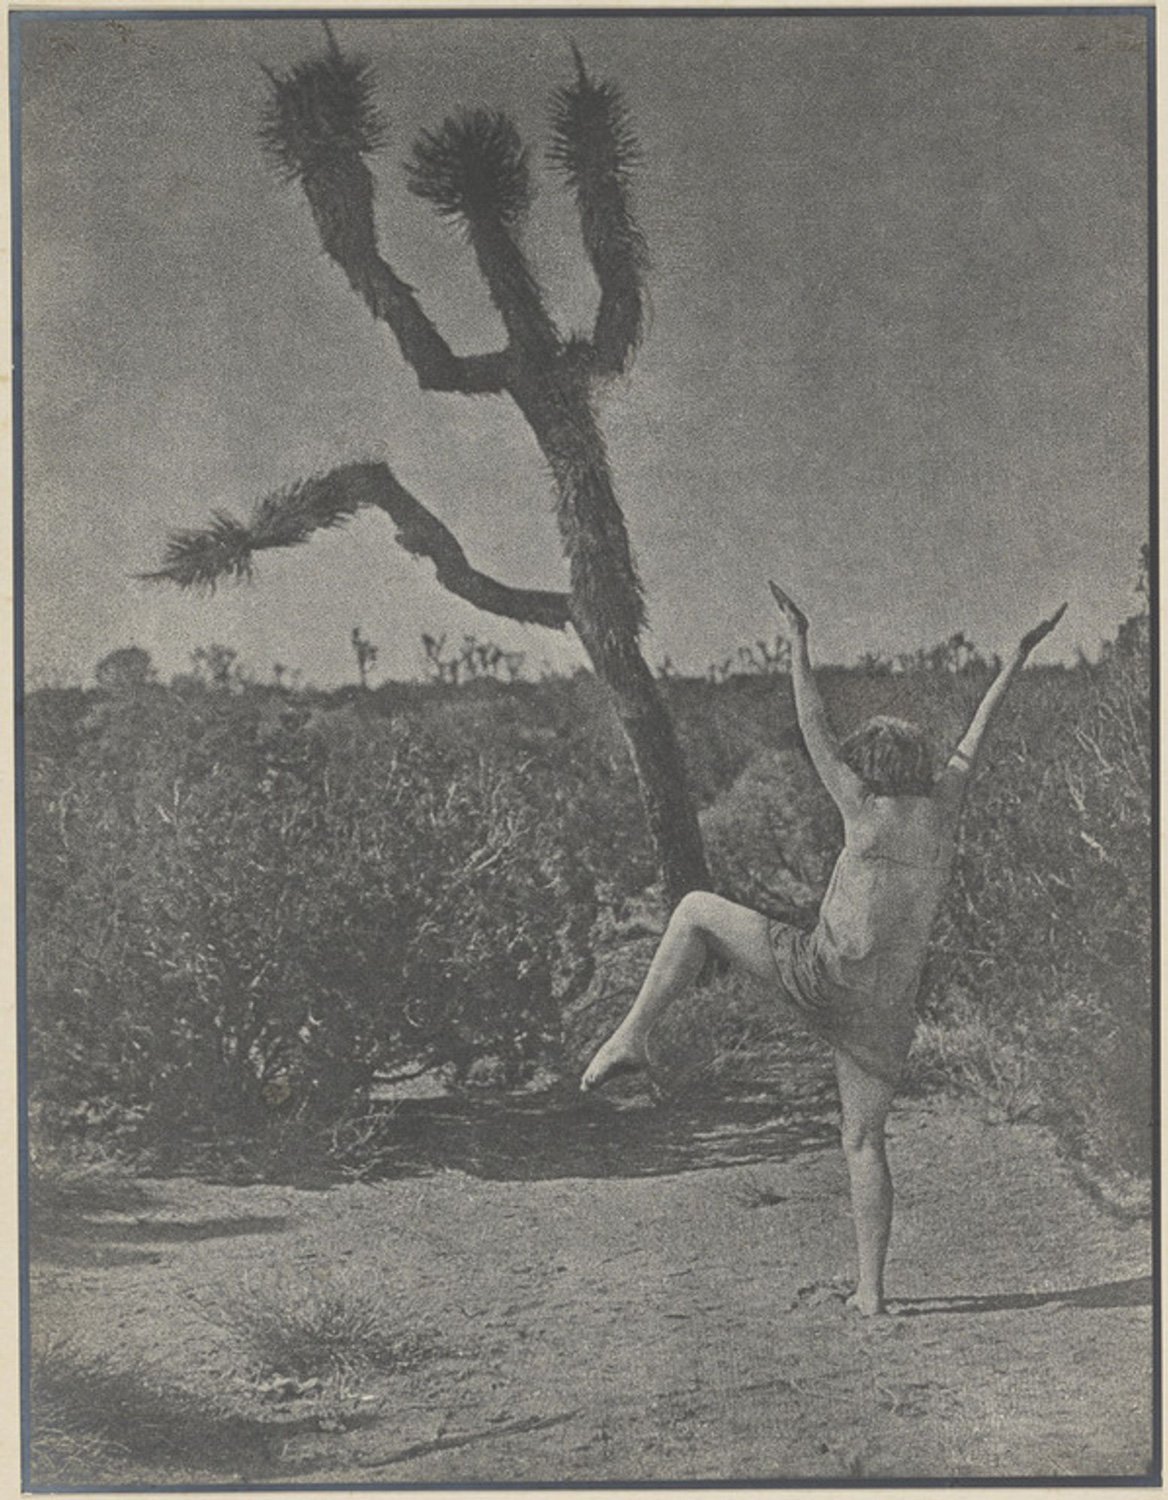 Louis Fleckenstein, Dancing Master, 1930